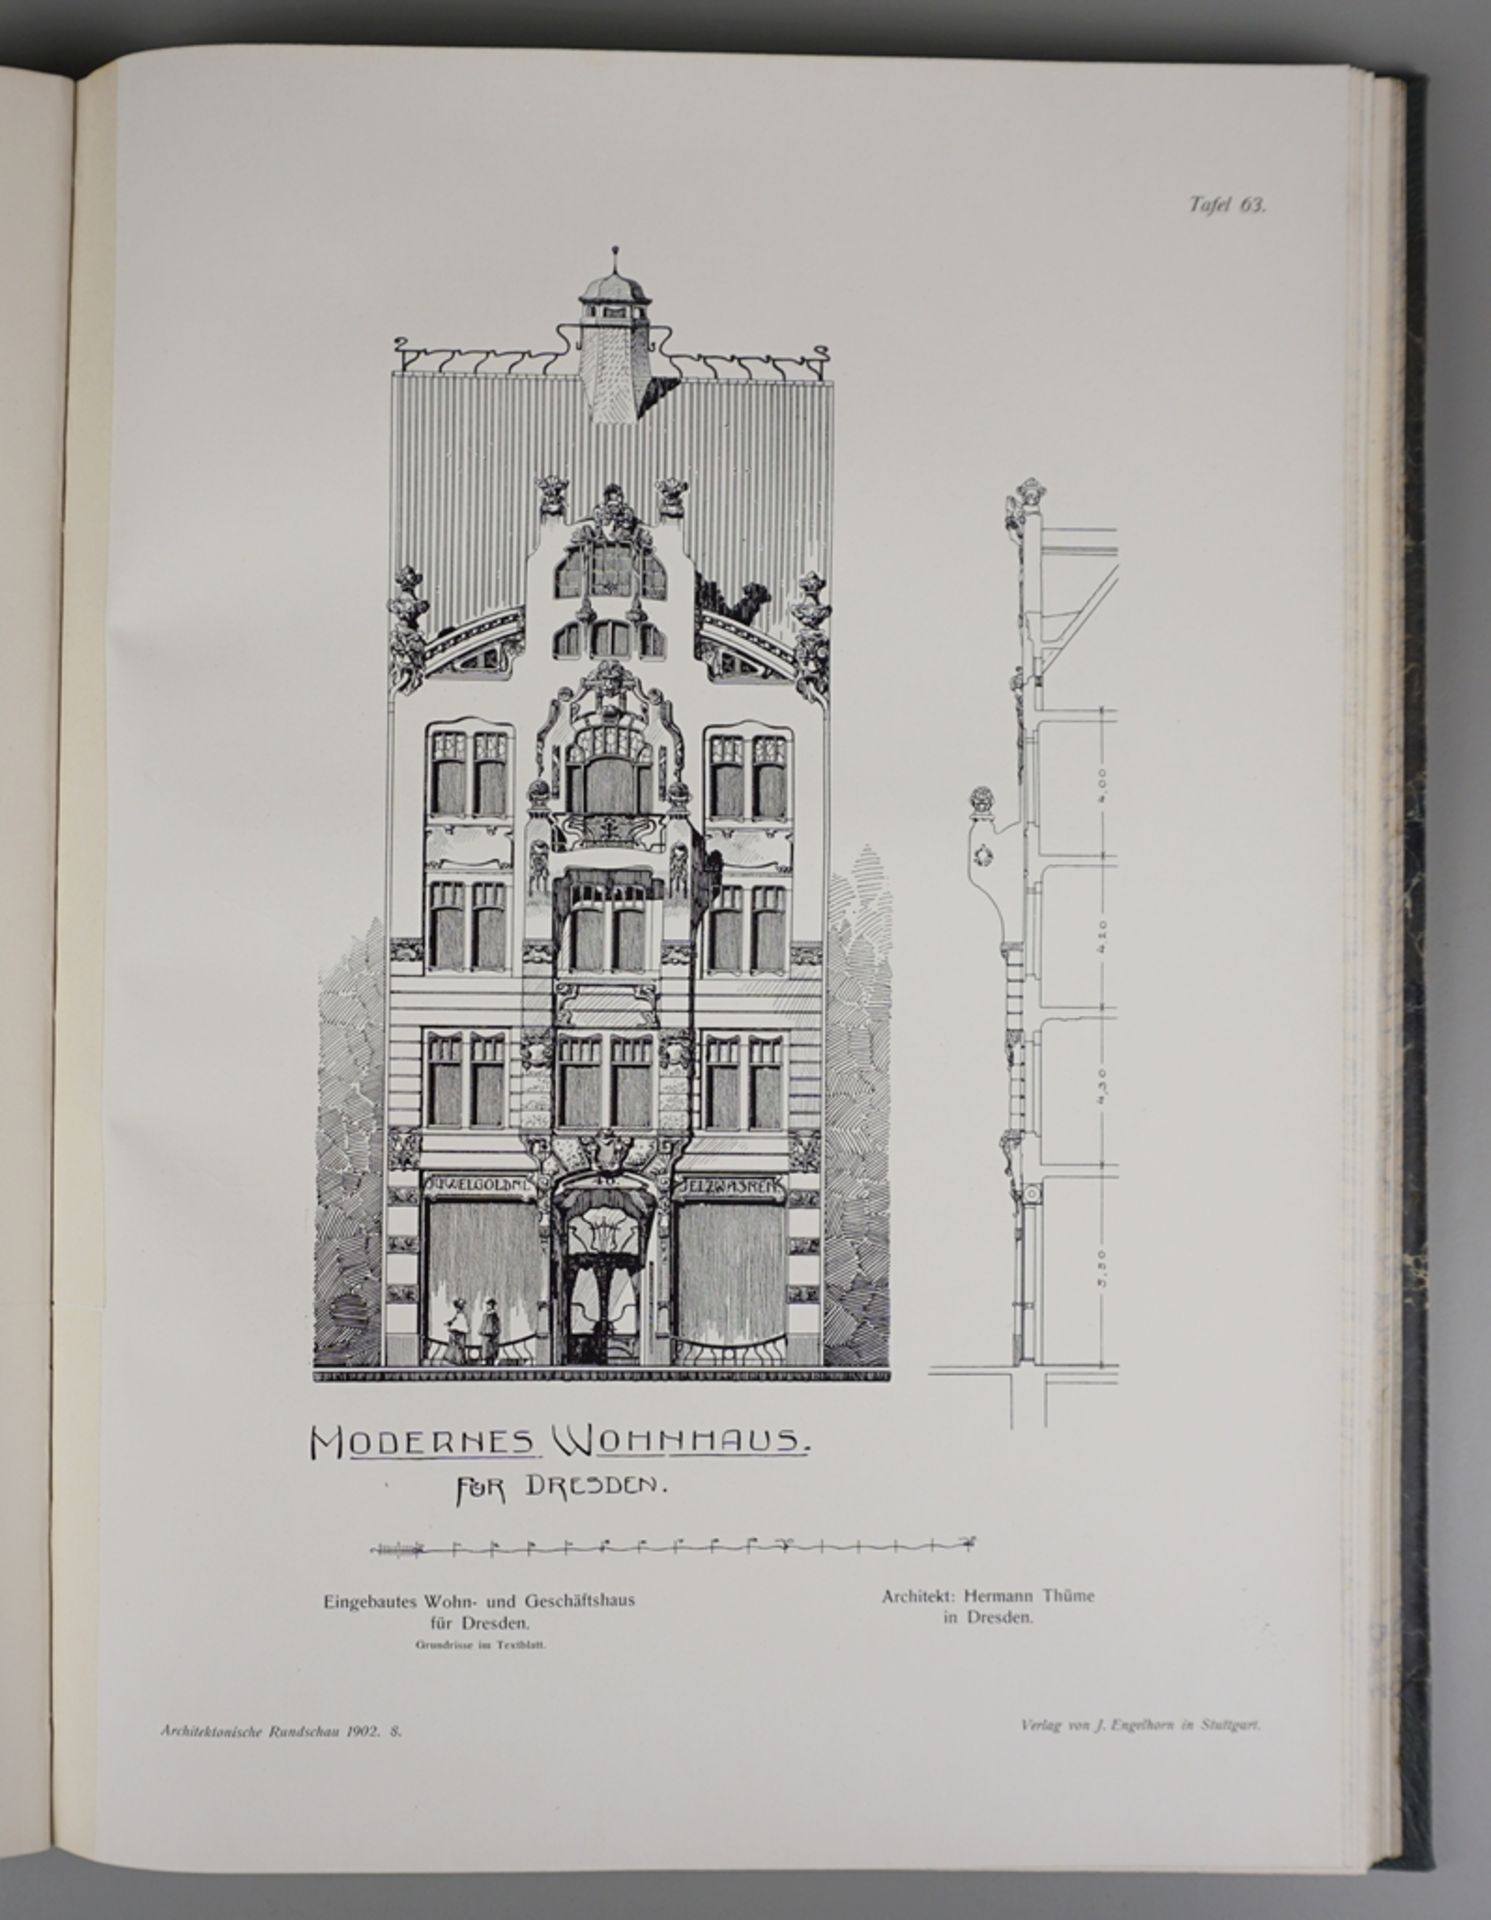 Architektonische Rundschau, 18. Jahrgang, 1902 - Image 3 of 4